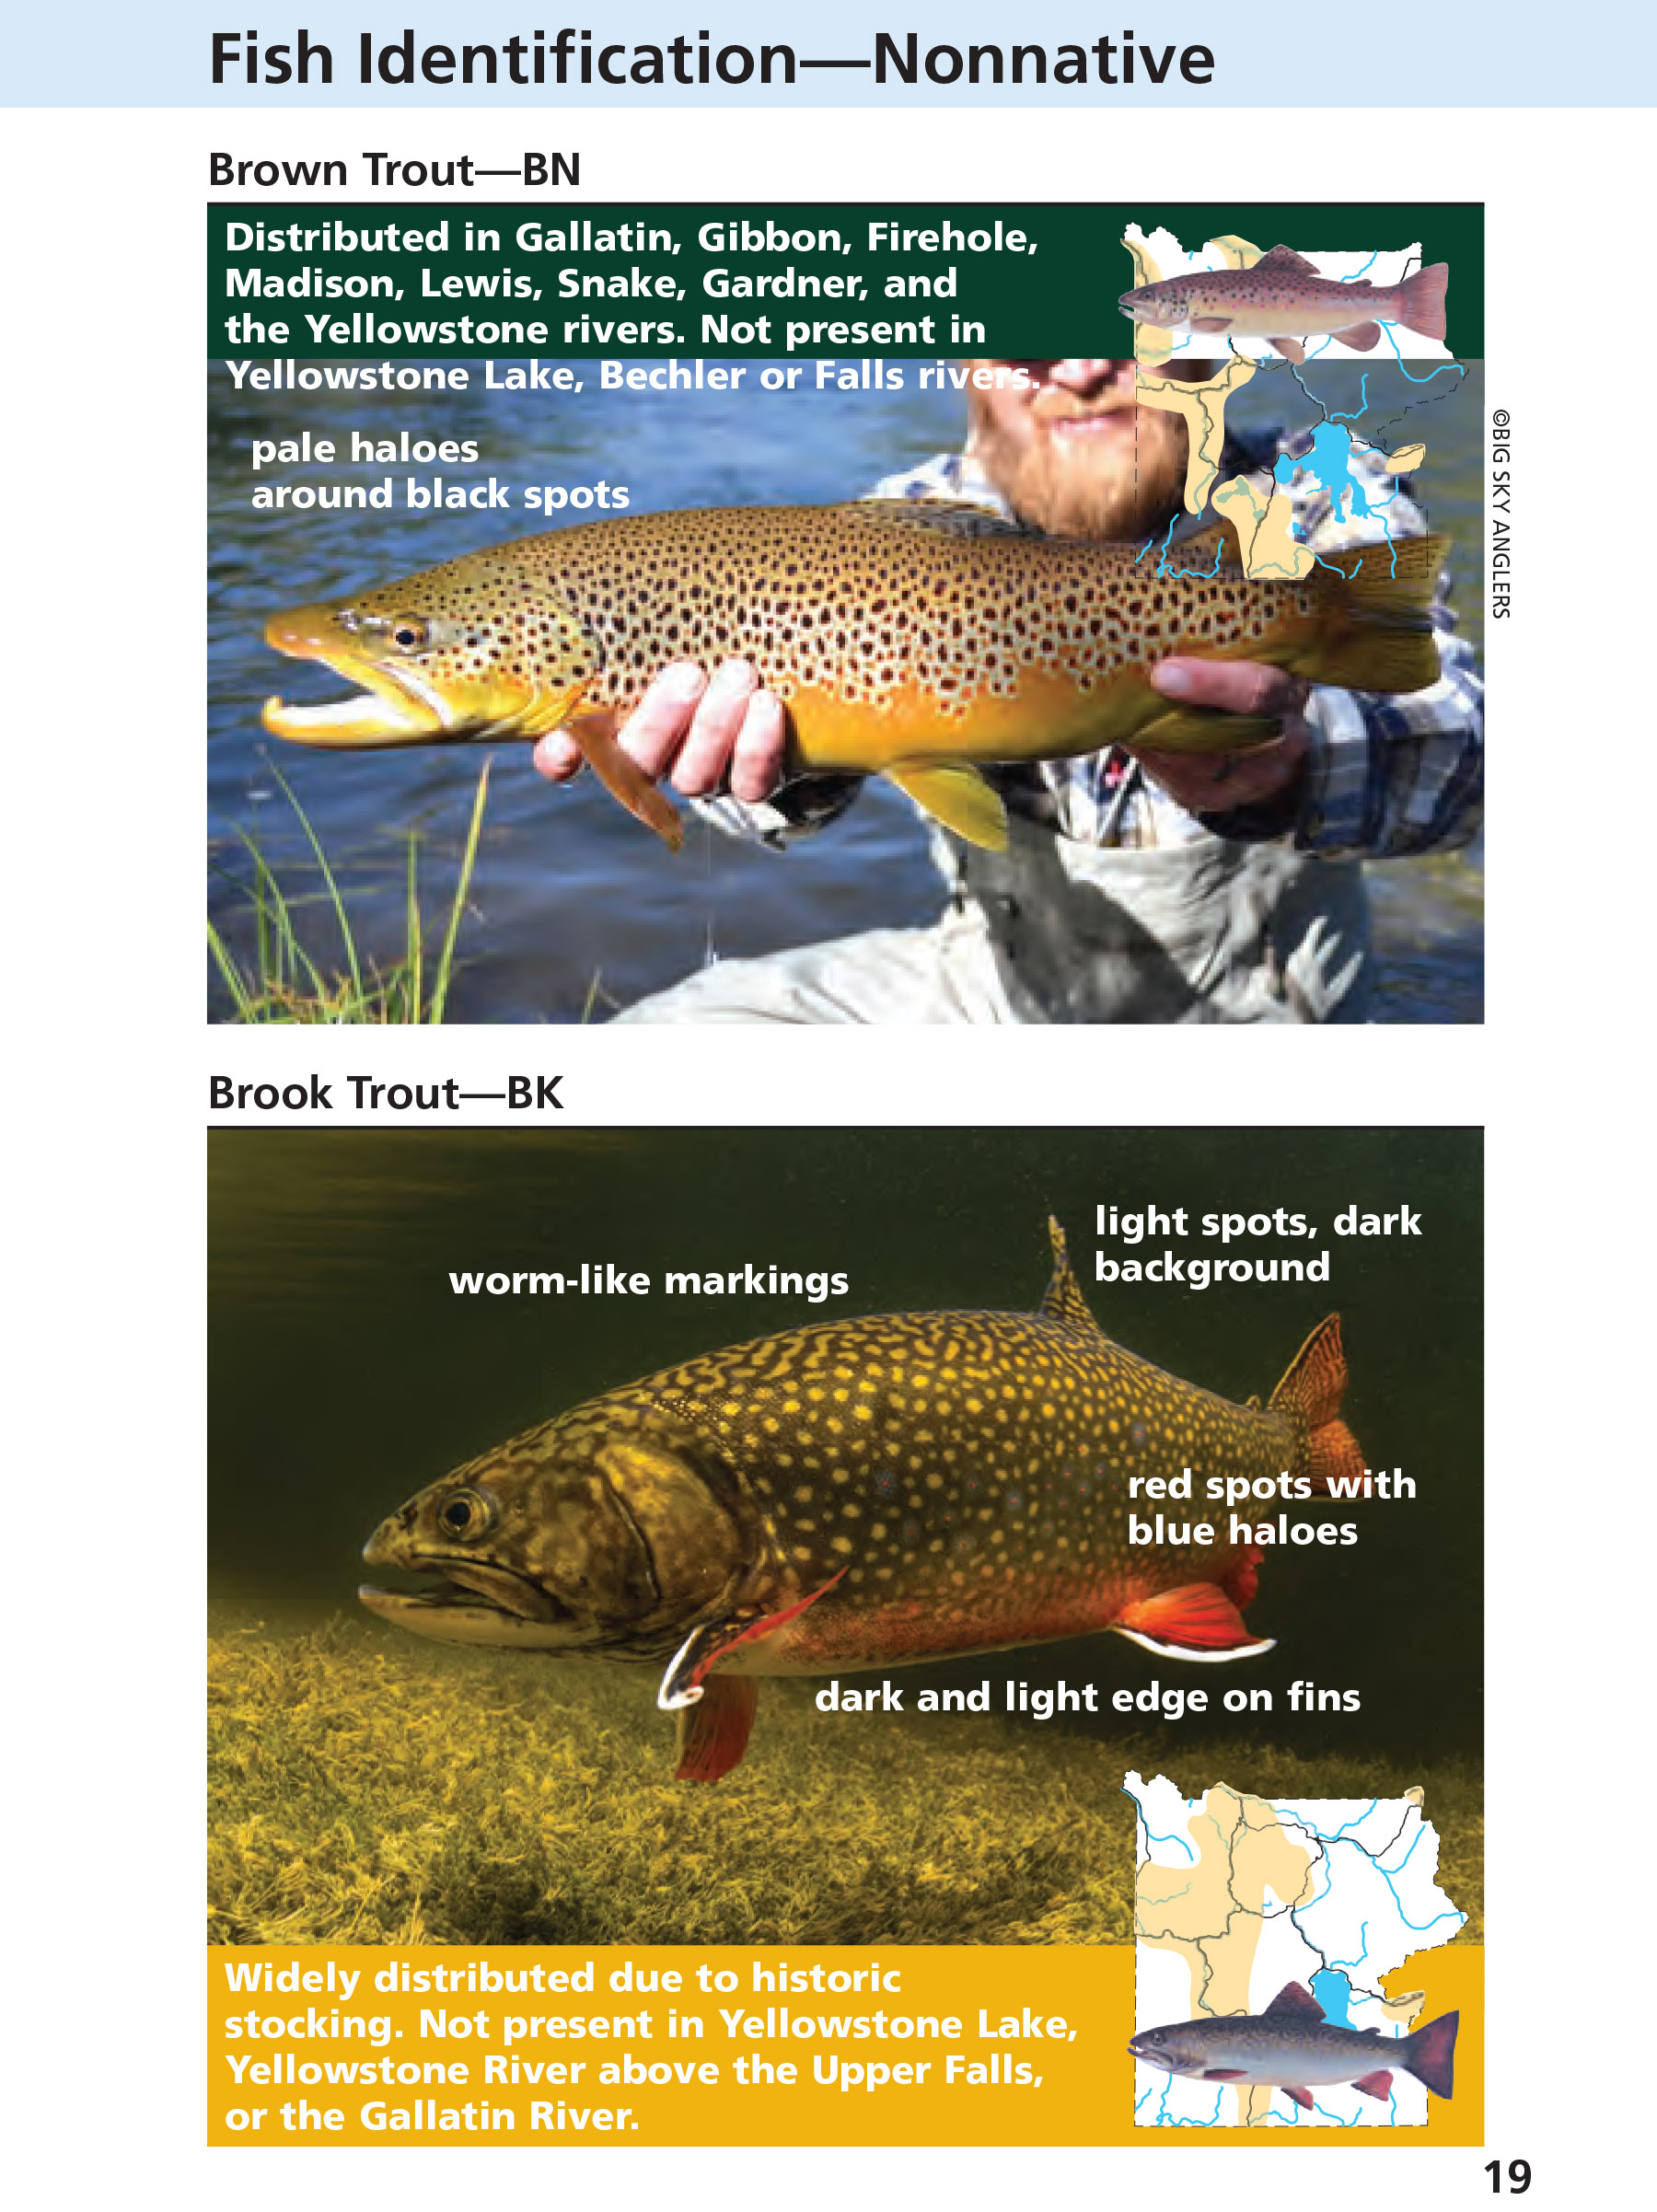 Yellowstone Fishing Regulations Page 19 - NPS Image